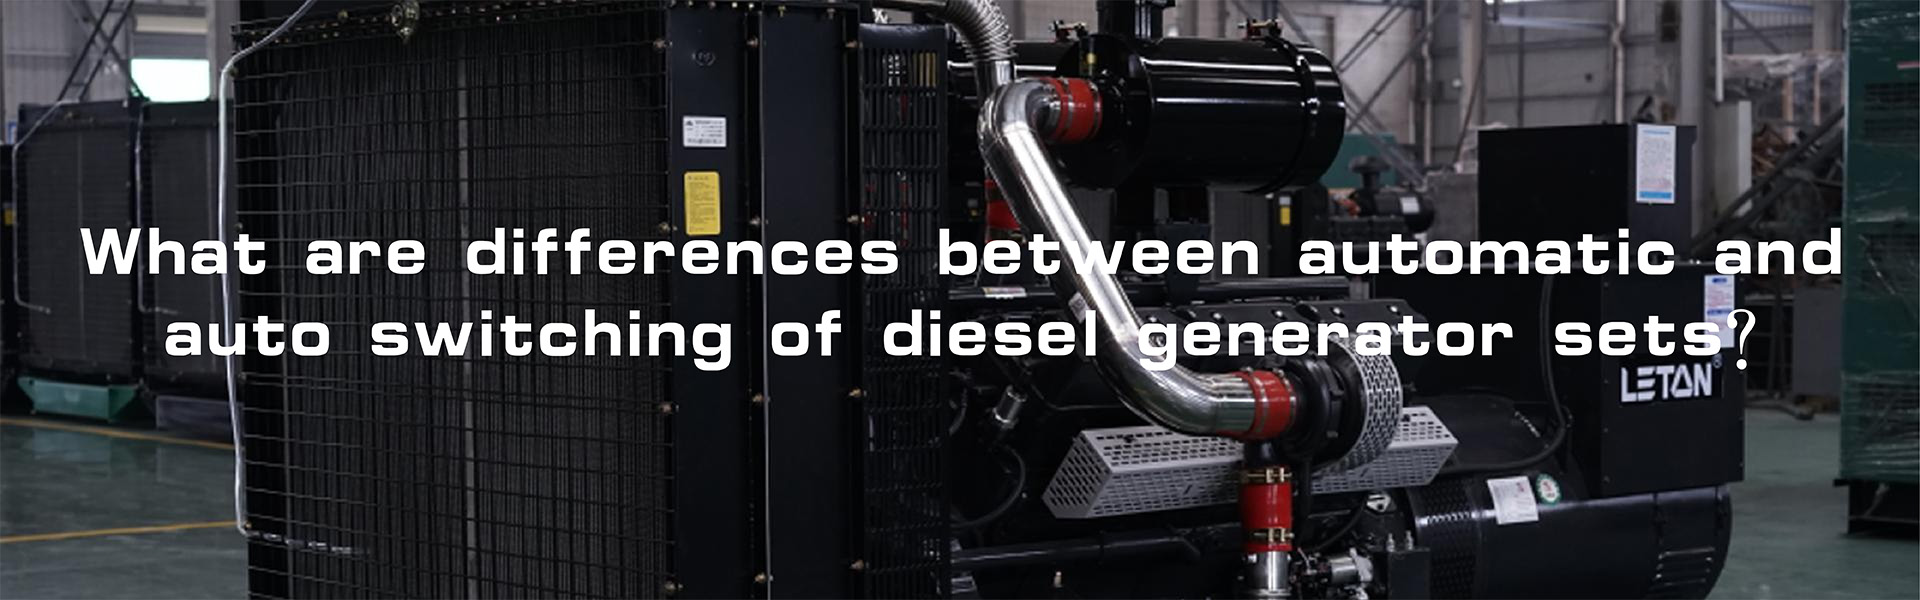 Sự khác biệt về chức năng giữa chuyển mạch tự động và tự động của bộ máy phát điện diesel là gì?